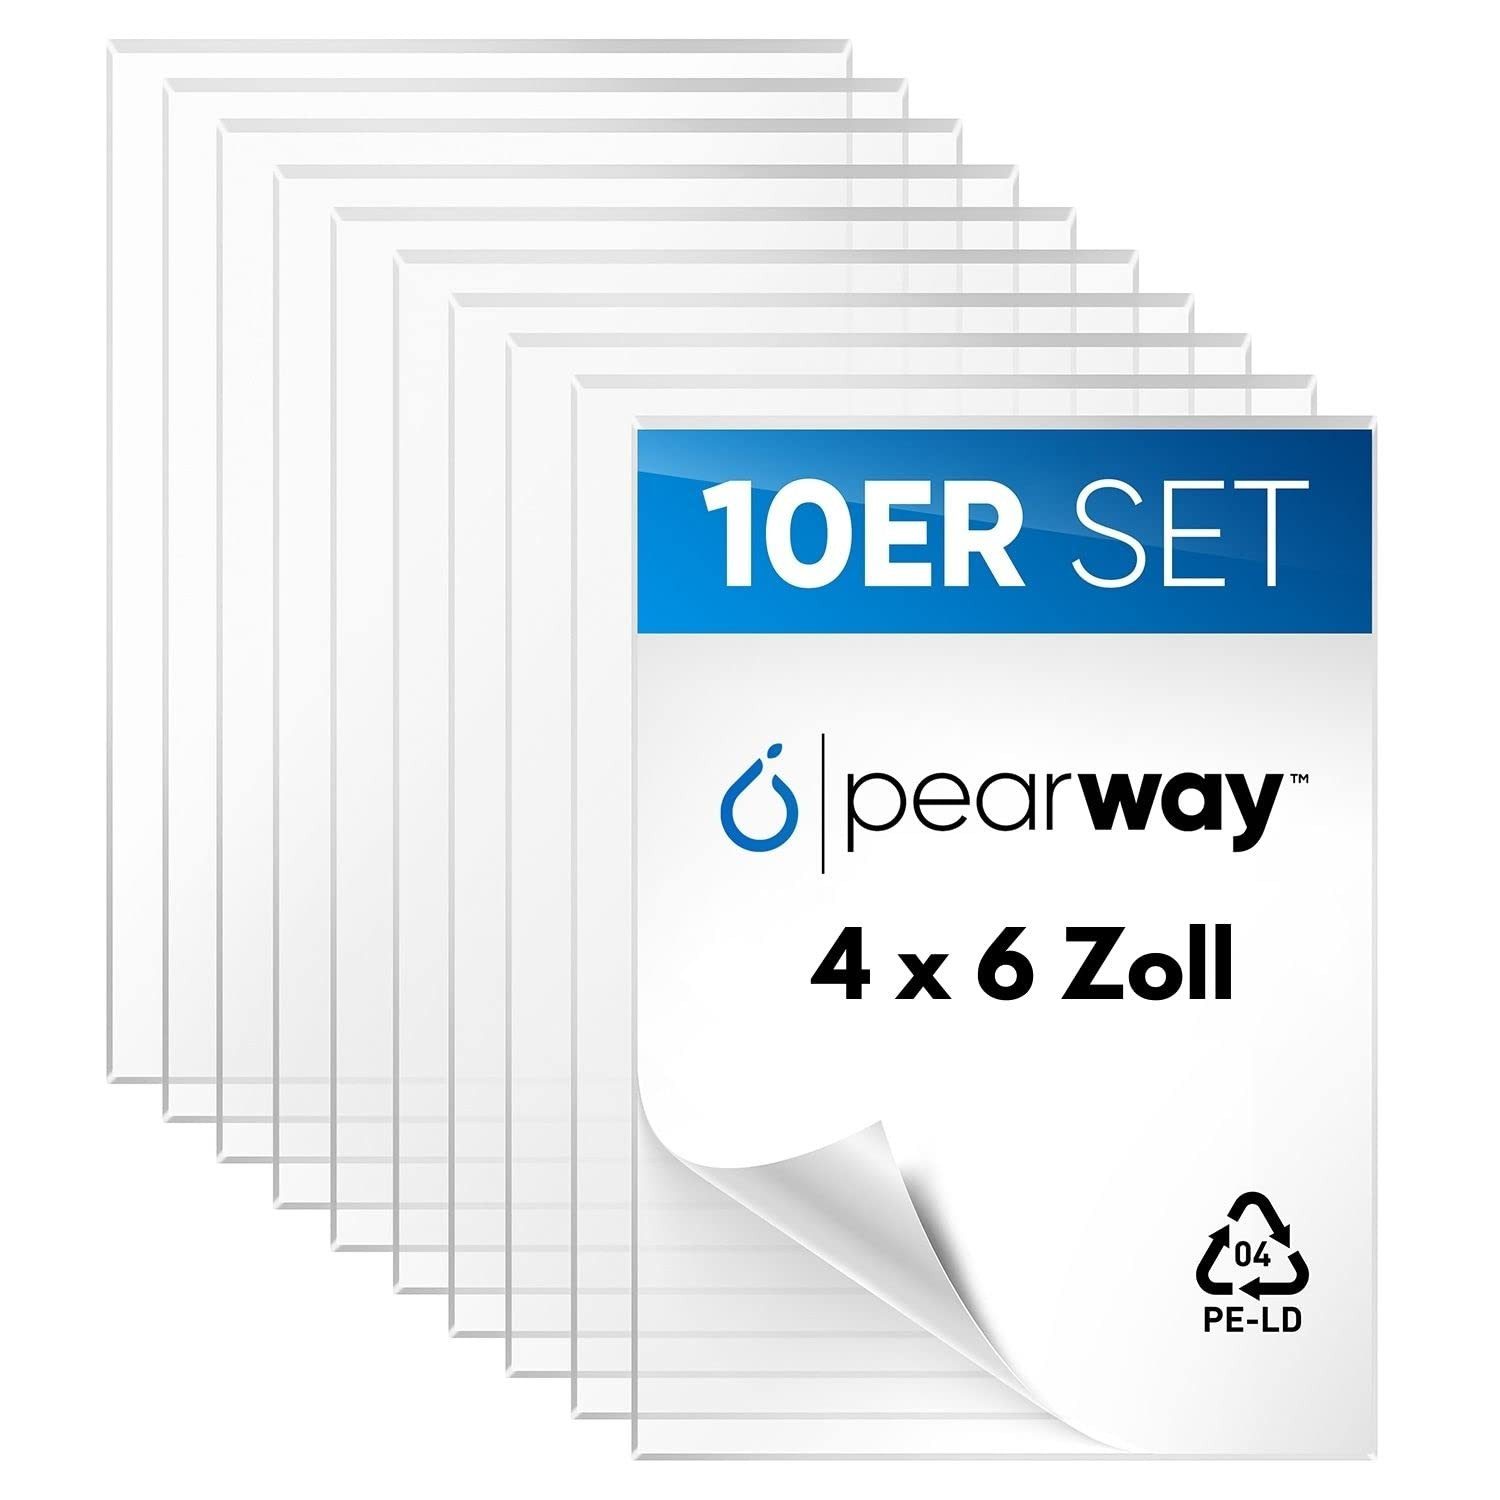 Pearway Umbauset PEARWAY™ Profi Set ultra klare Acrylglas Platten [10er Set] I